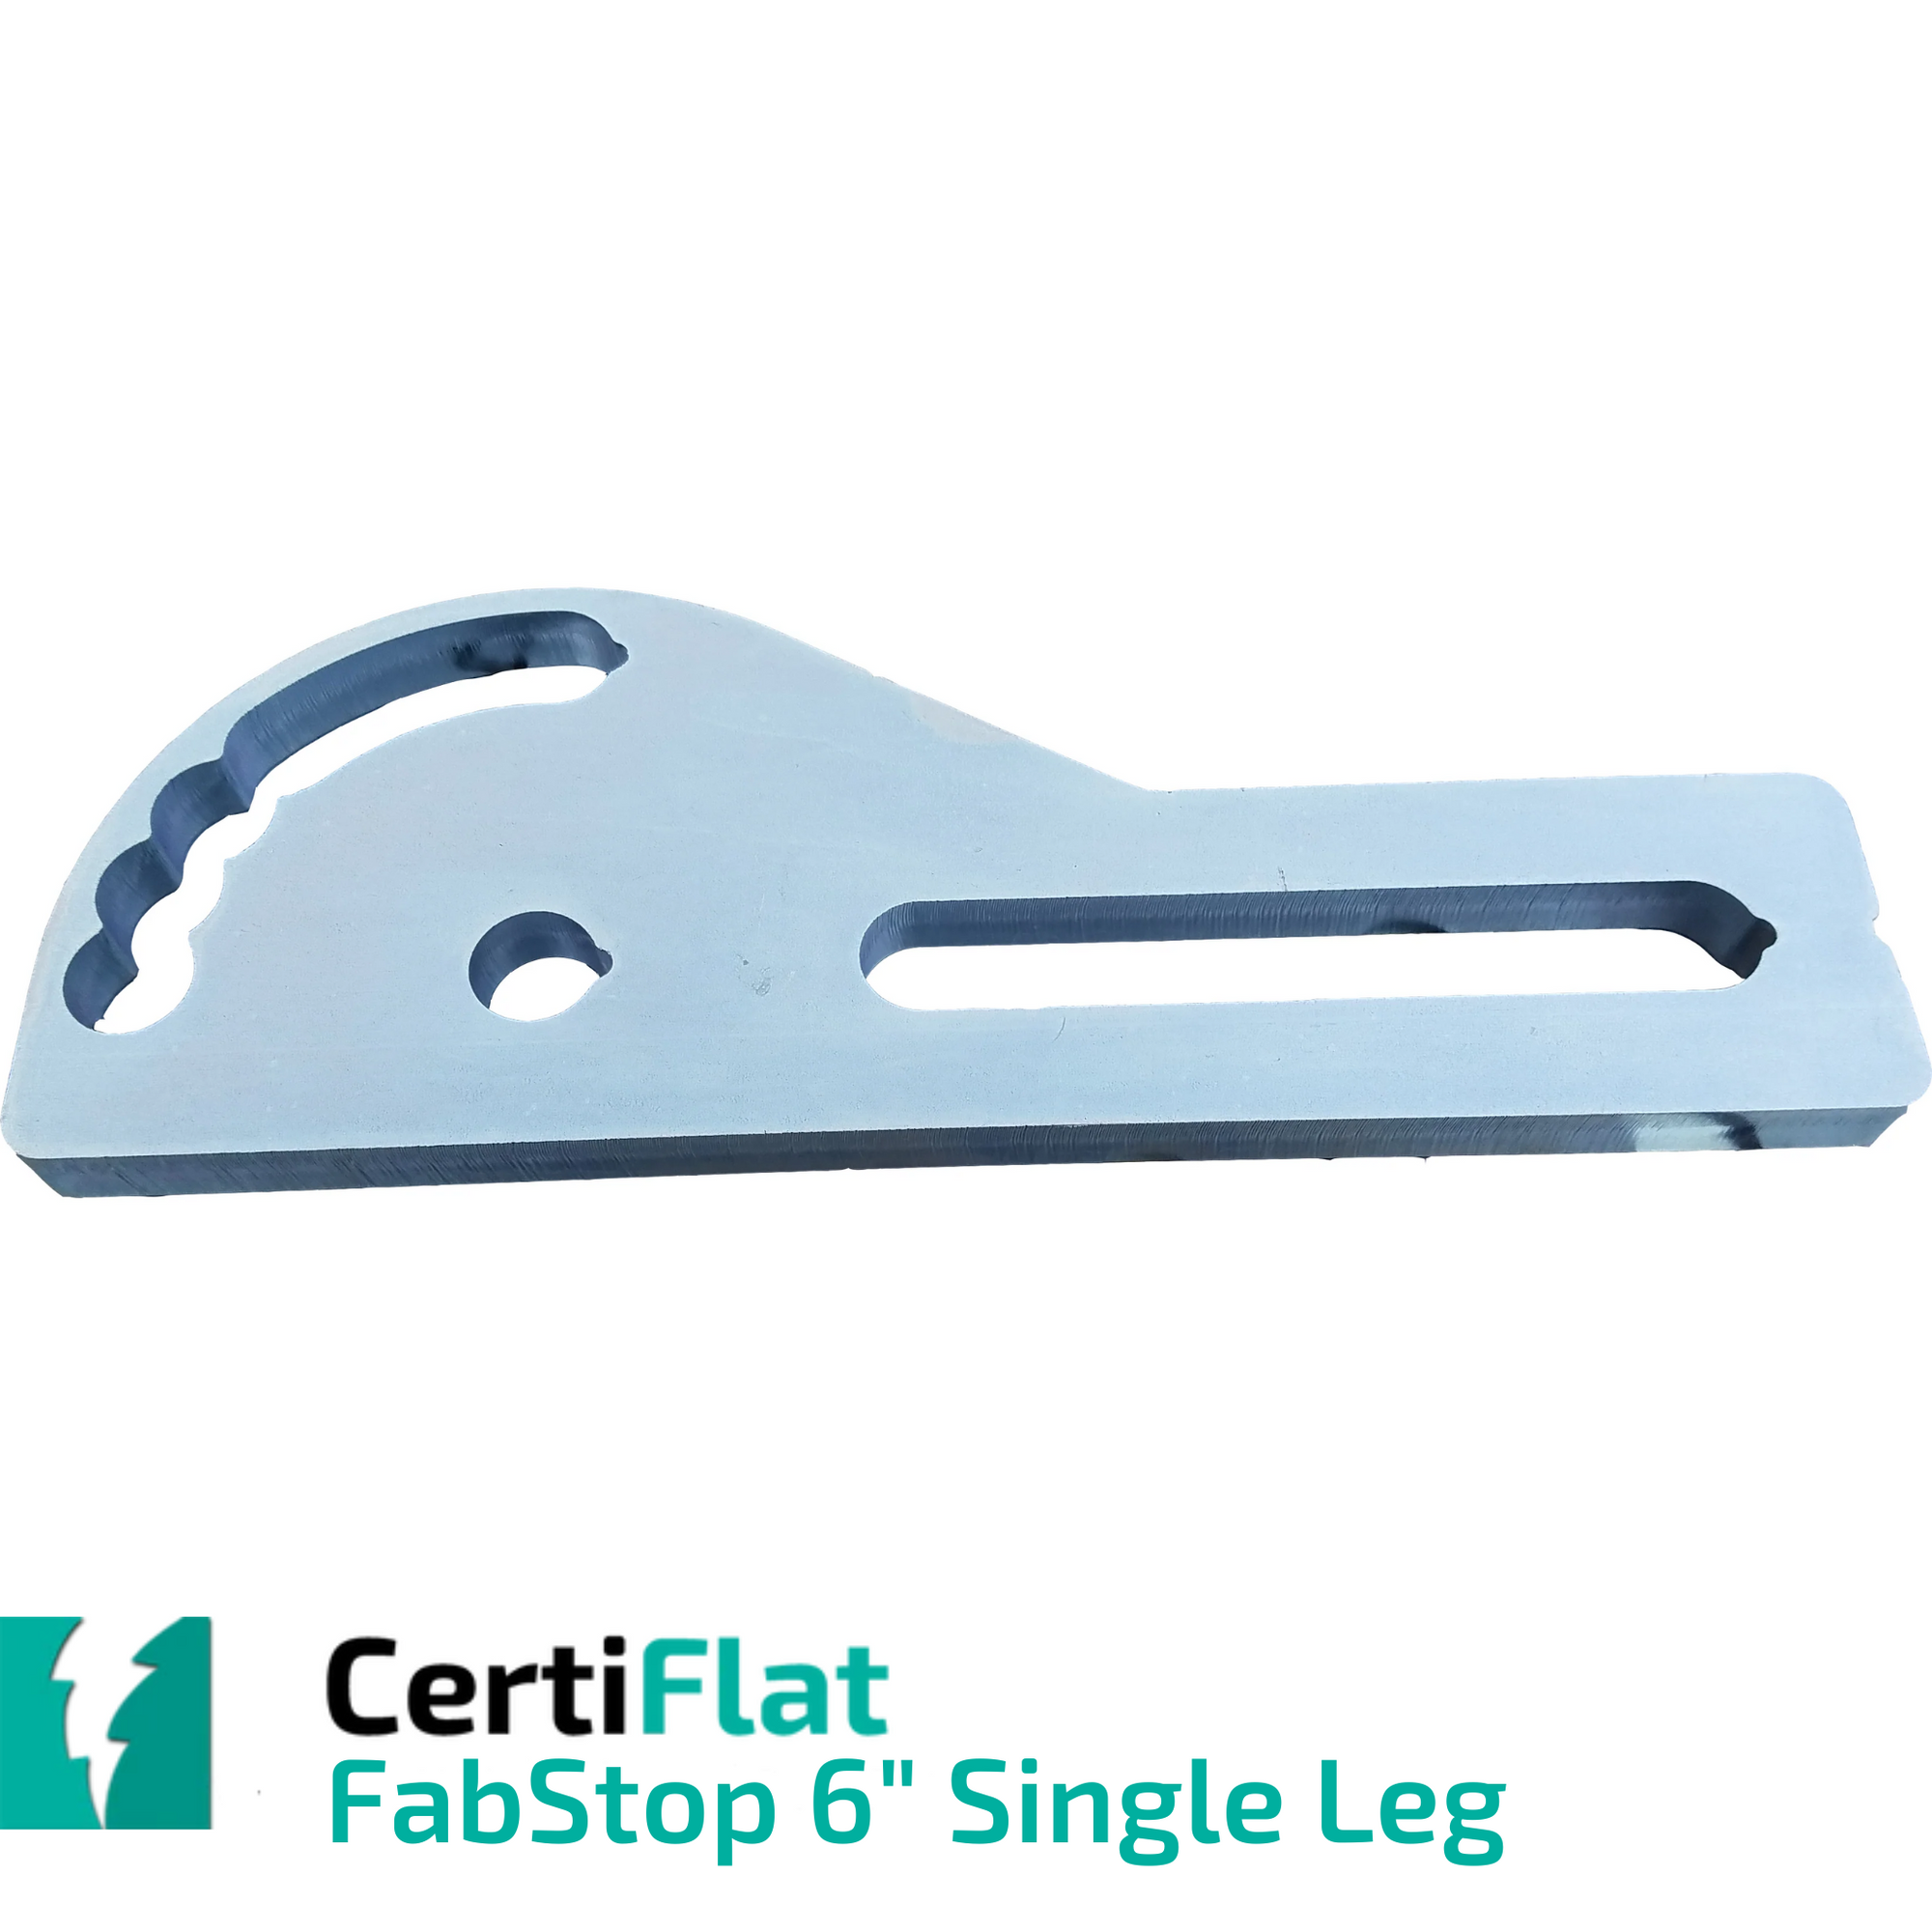 CertiFlat Fabstop 6" Single Leg